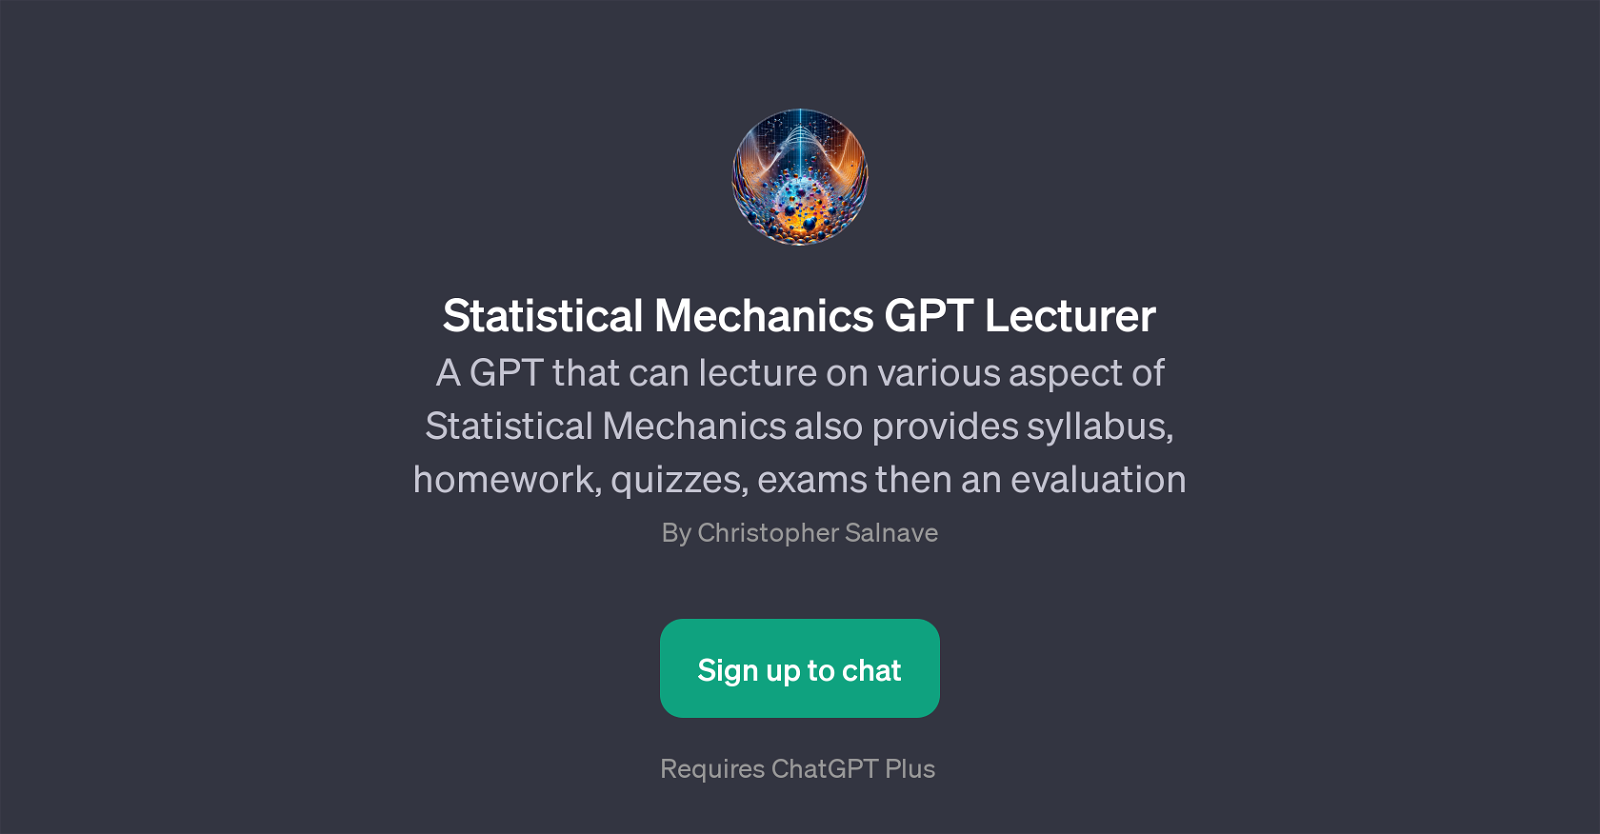 Statistical Mechanics GPT Lecturer website